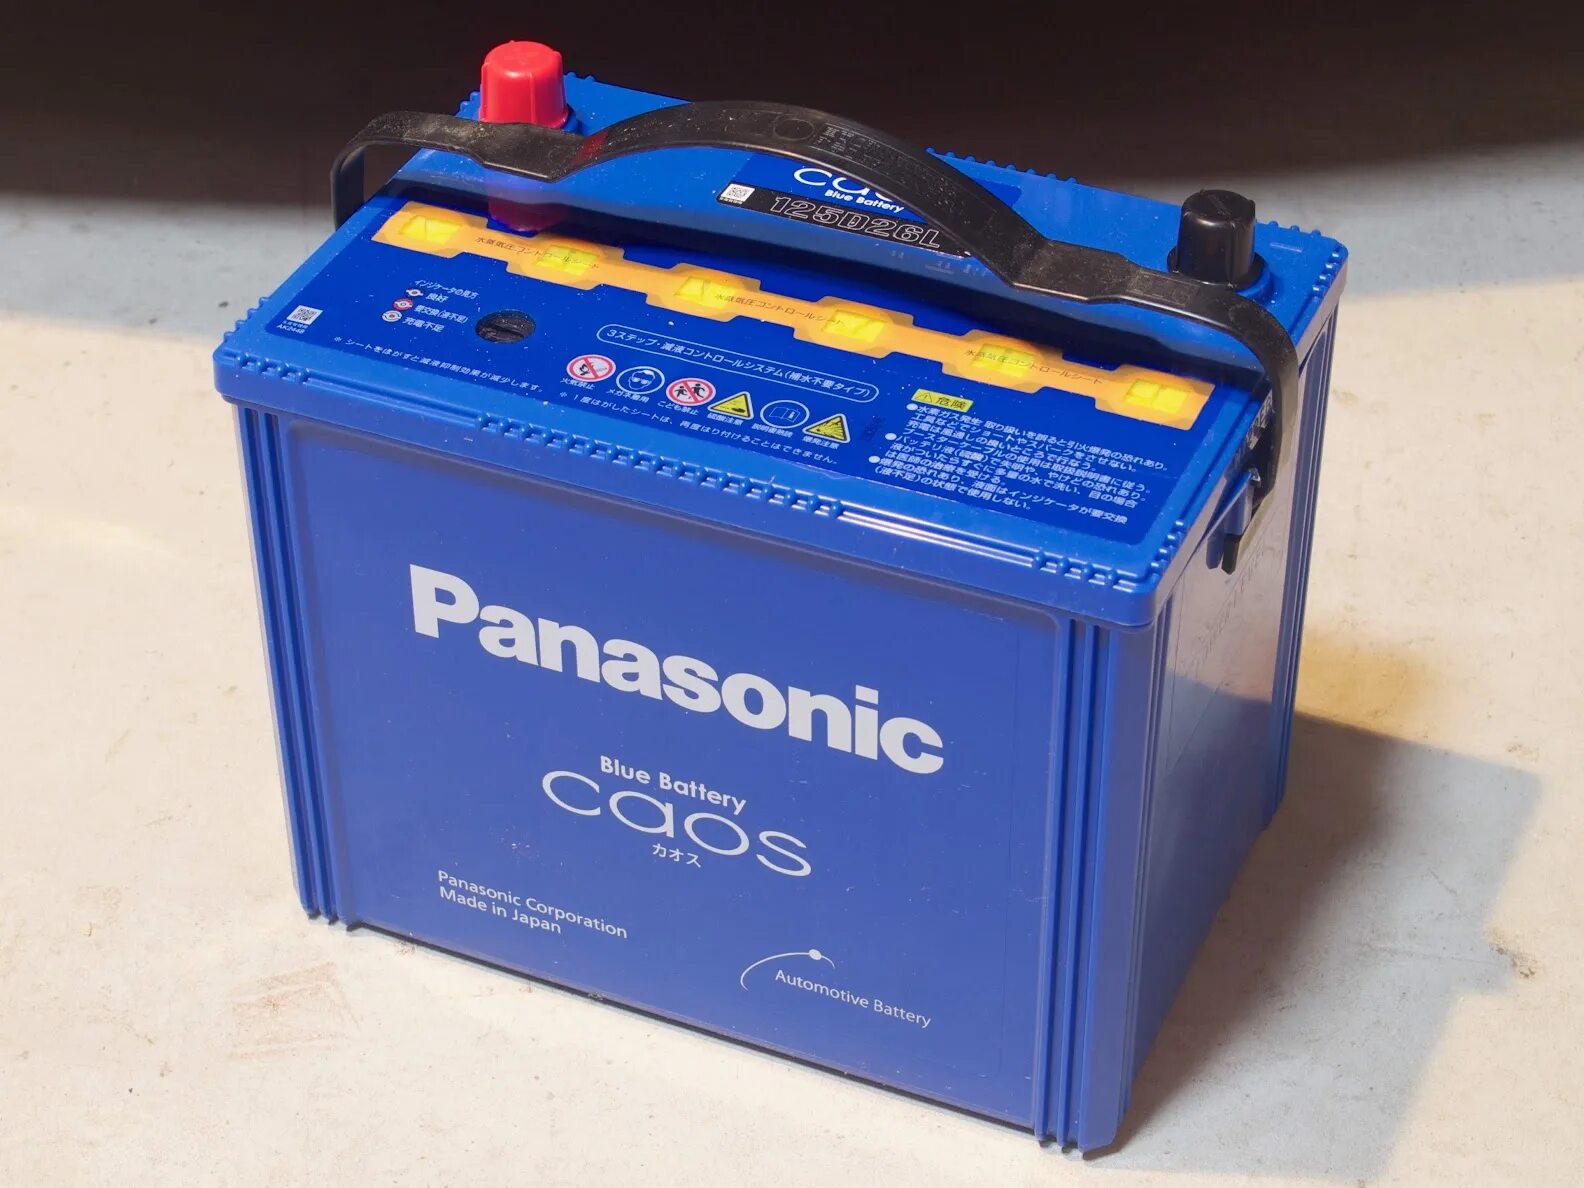 Аккумулятор Panasonic 125d26l. Аккумулятор Панасоник для авто 65. Аккумулятор Panasonic caos Blue Battery. Аккумулятор Panasonic caos Blue Battery 80b24l. Аккумулятор для автомобиля 65